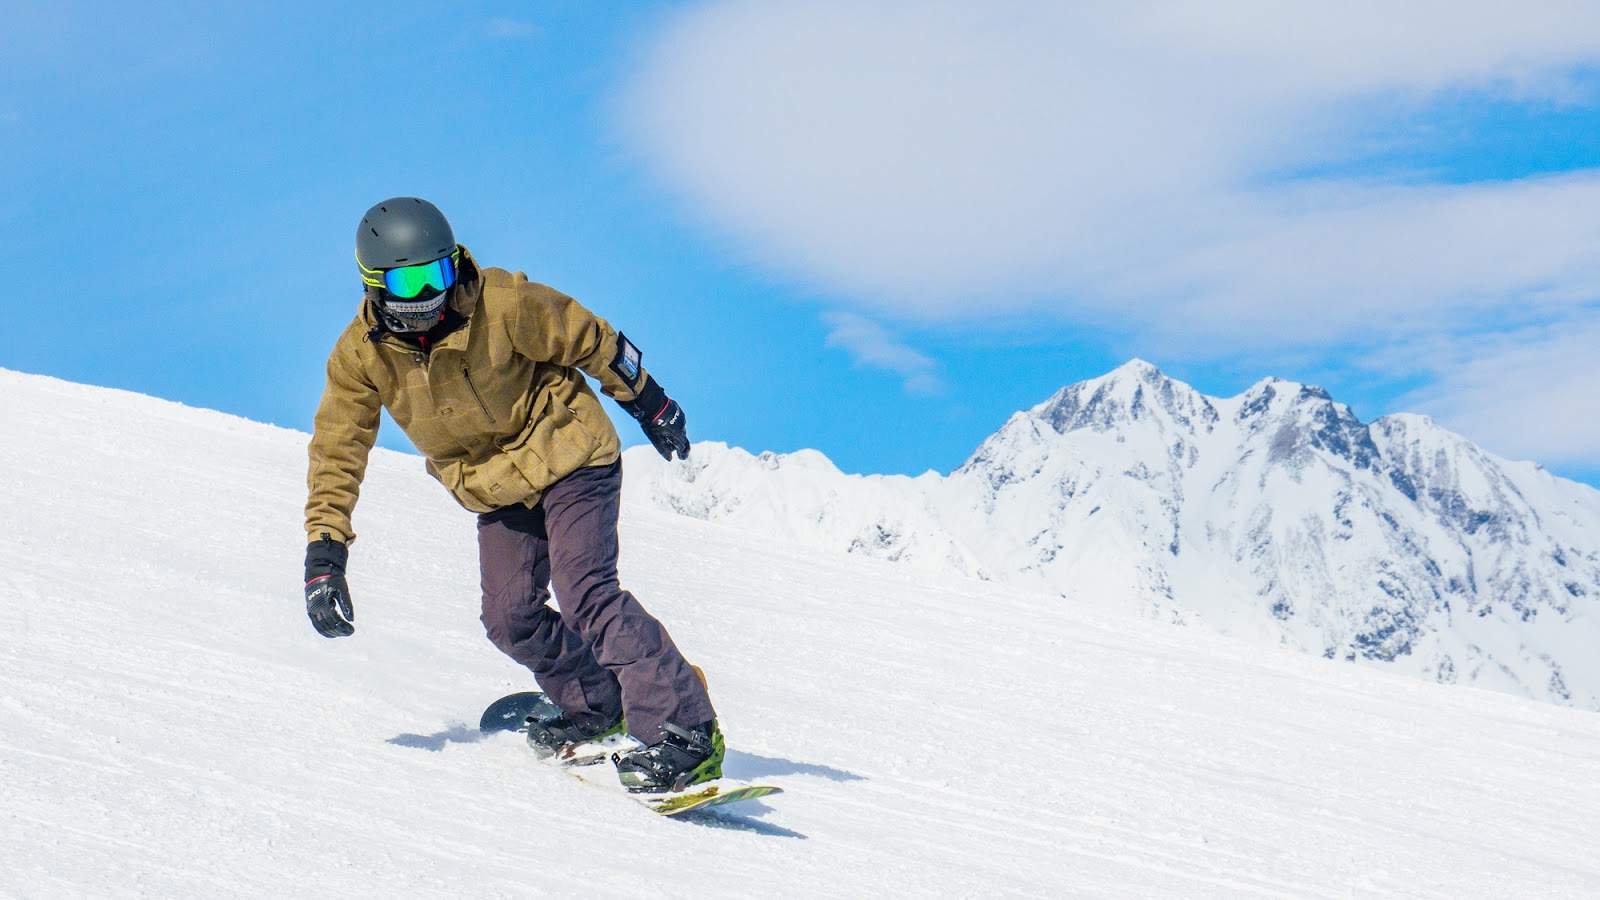 2. 北海道の冬と言えばやっぱりコレ「スキー・スノーボード」